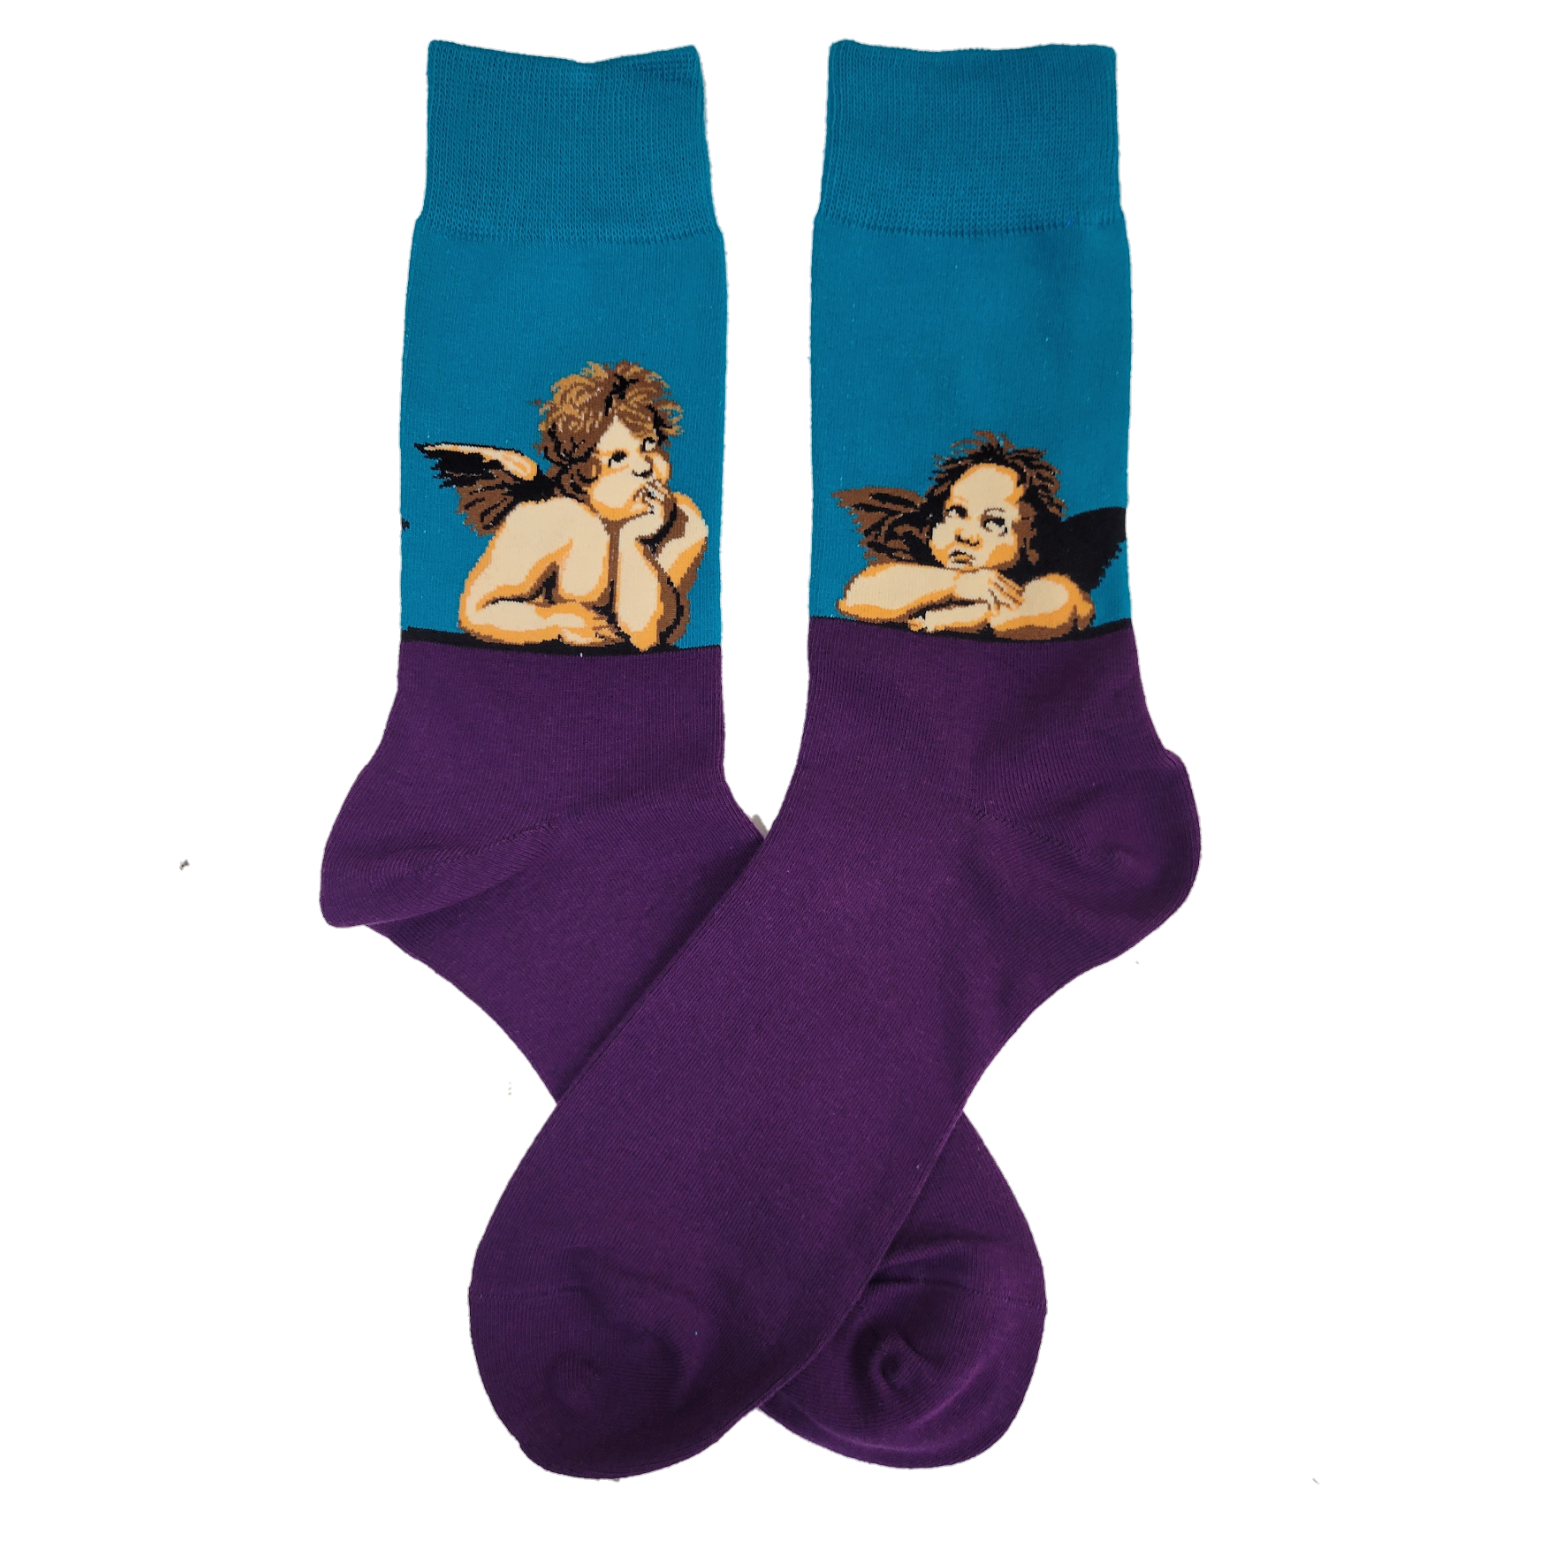 Famous Art Socks (Men's & Women's Sizes) 2 cherubs